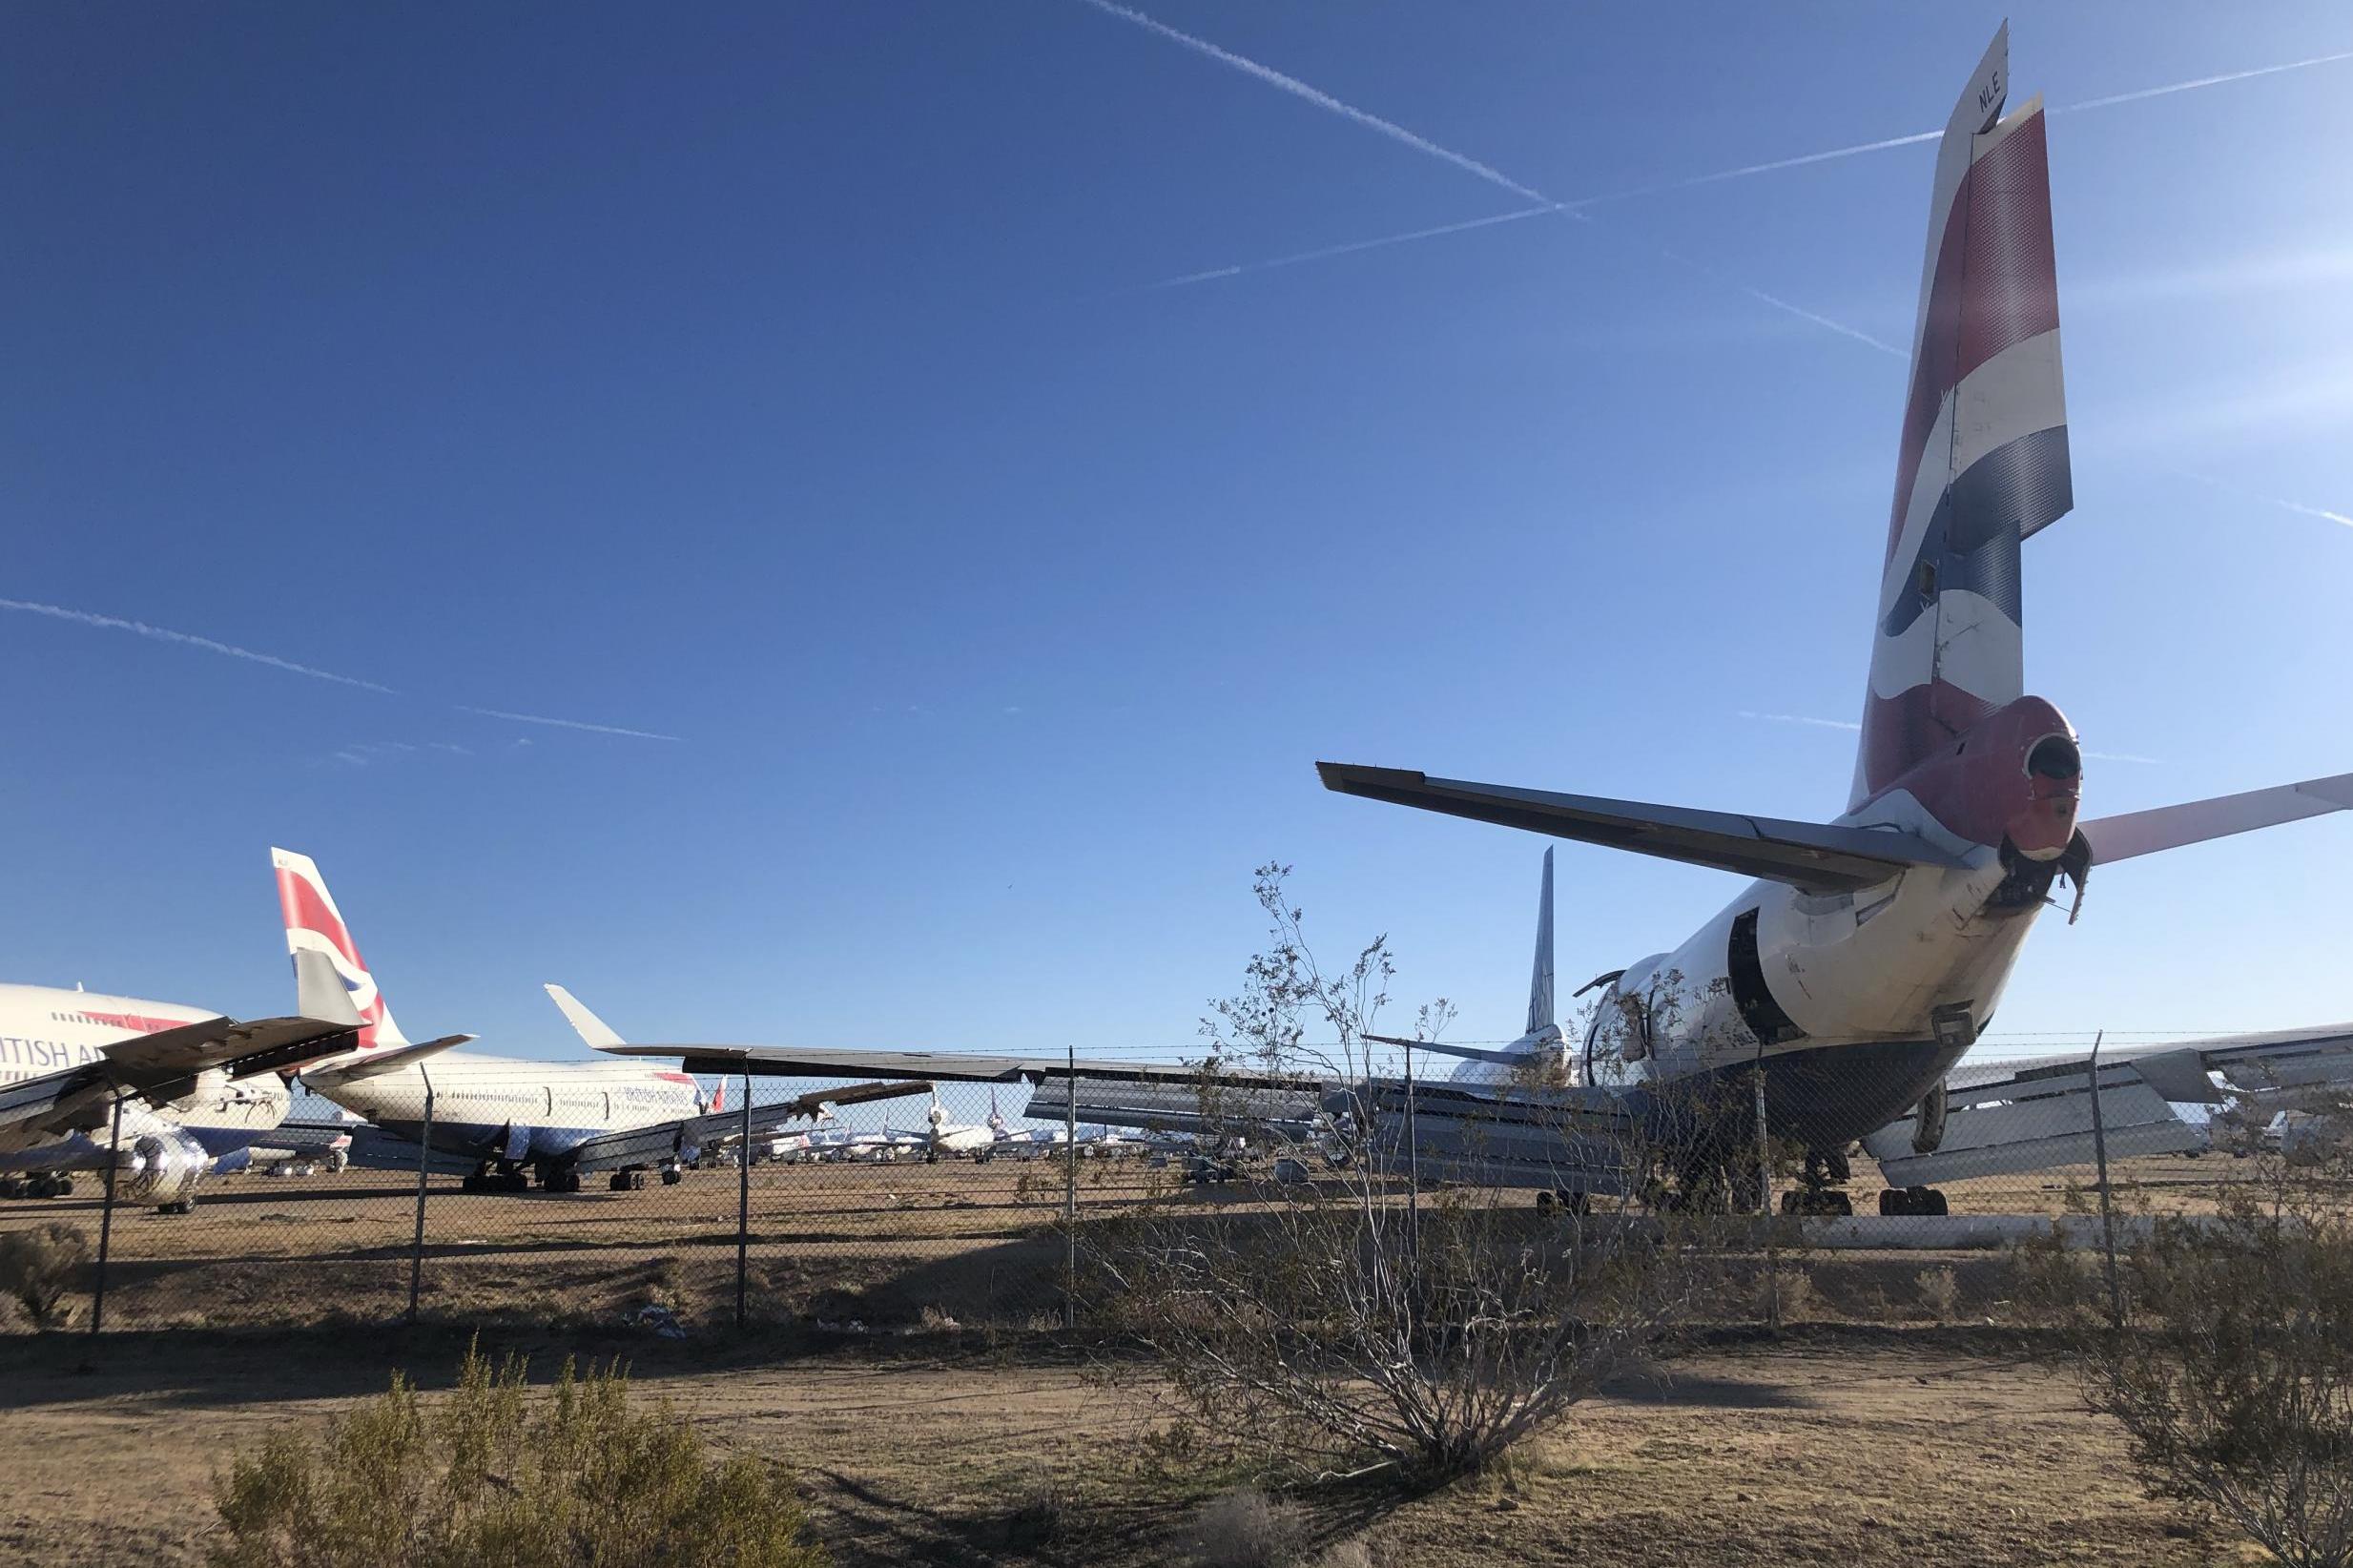 Desert pawn: British Airways 747s ending their days in Victorville, California